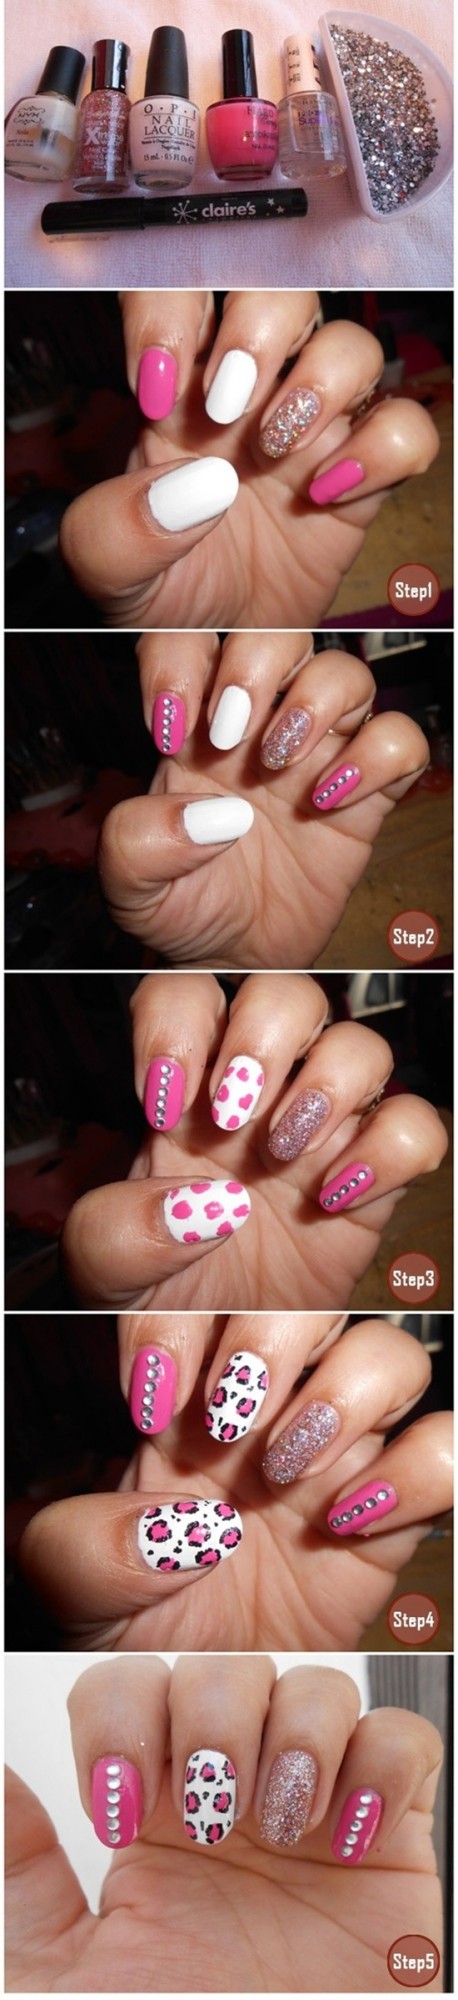 stylish pink nail art ideas (18)